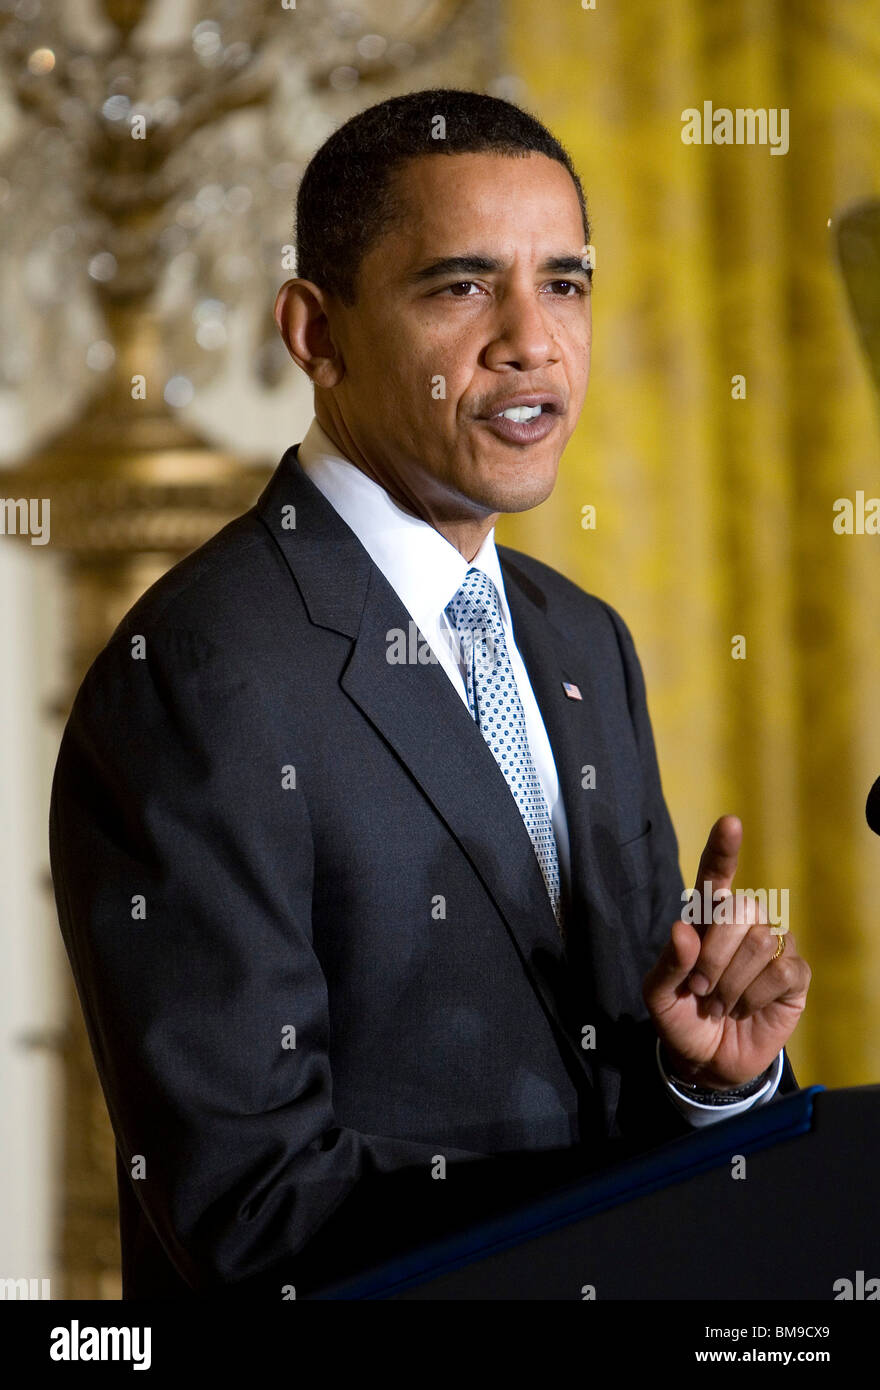 13 février 2009 – Washington, D.C. – le président Barack Obama fait des remarques sur le plan de relance économique aux membres du Business Council dans la salle est de la Maison Blanche. Banque D'Images